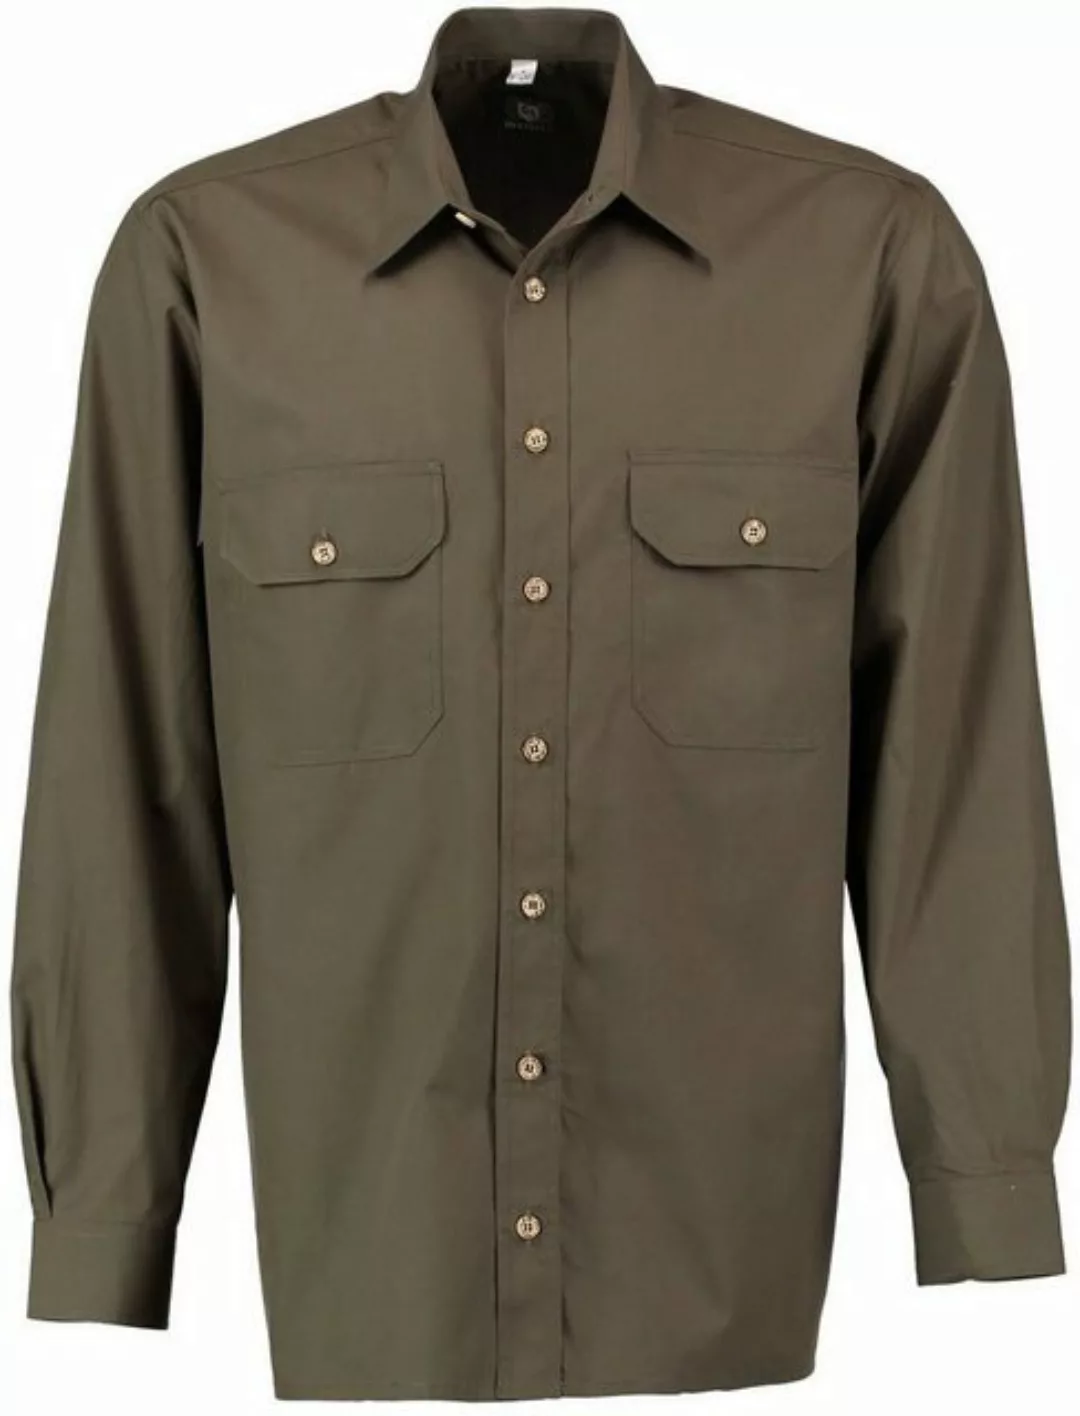 orbis Outdoorhemd Jagdhemd Oliv/grün Outdoorhemd mit 2 Brusttaschen von Oef günstig online kaufen